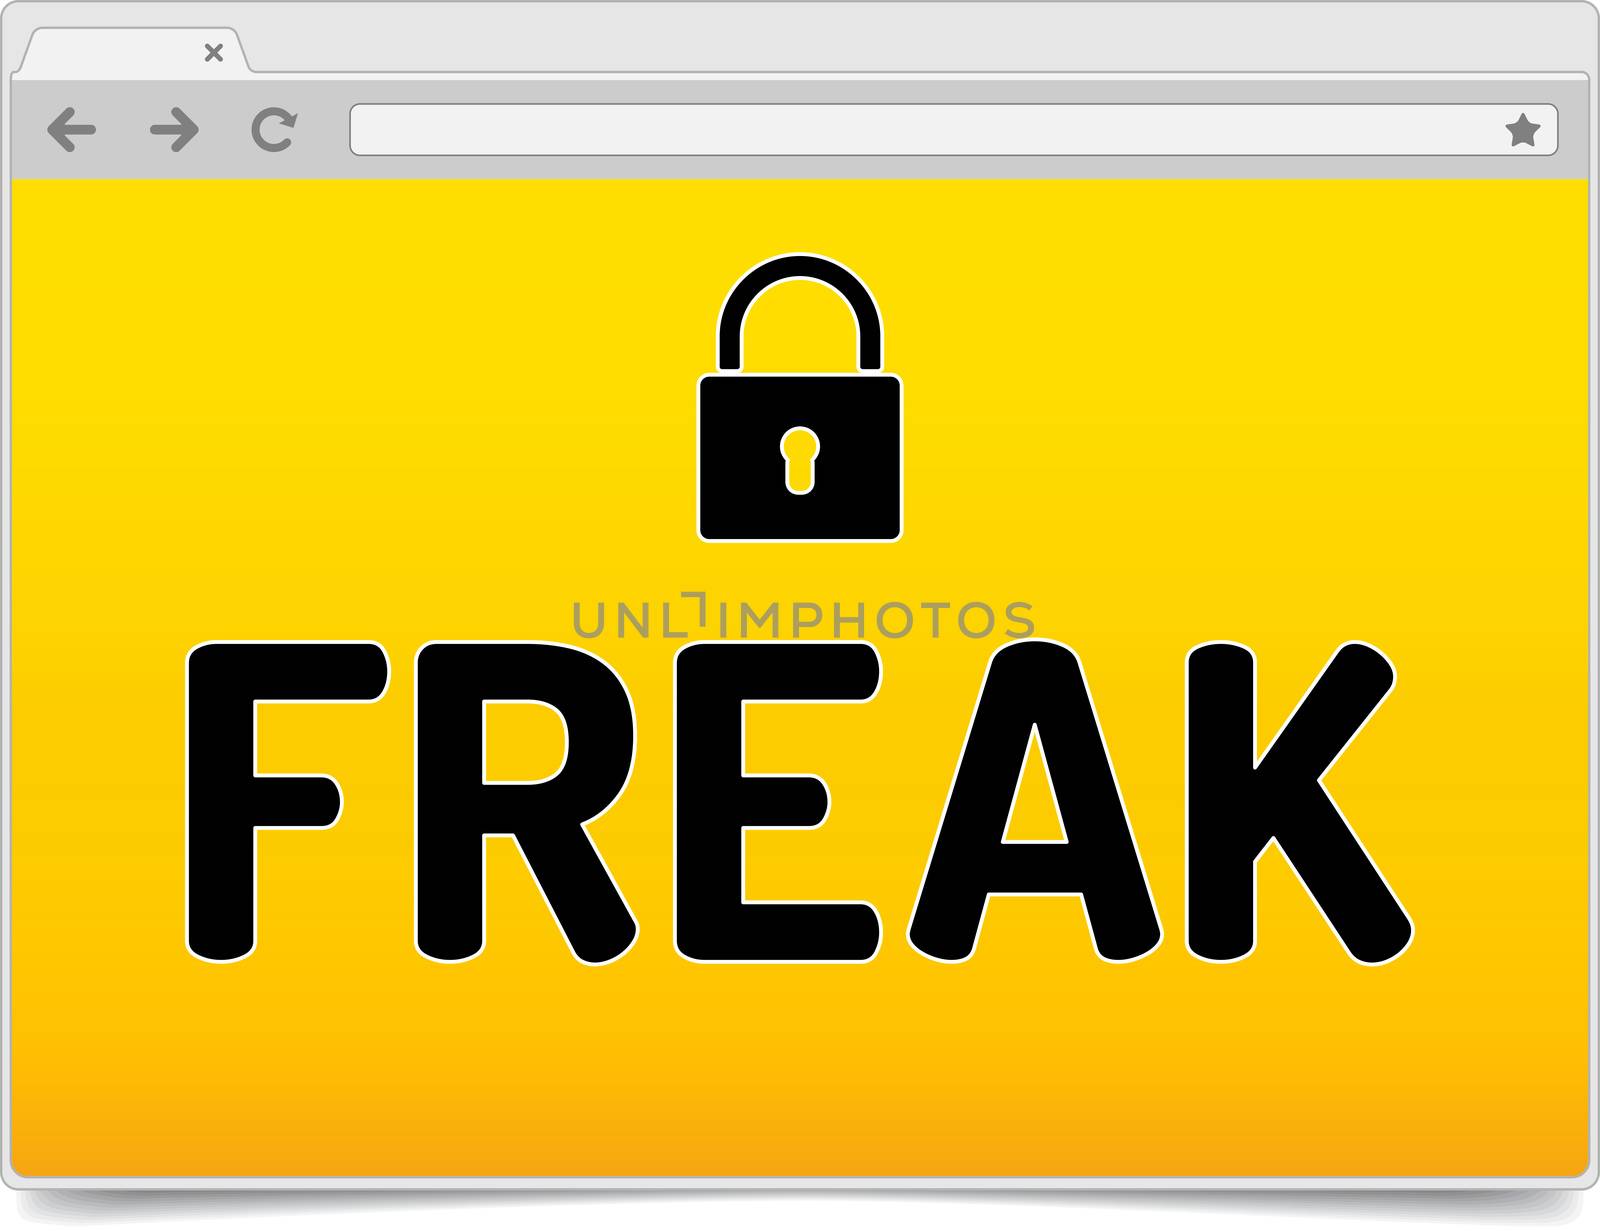 FREAK - Factoring RSA Export Keys Security - Warning in simple o by akaprinay